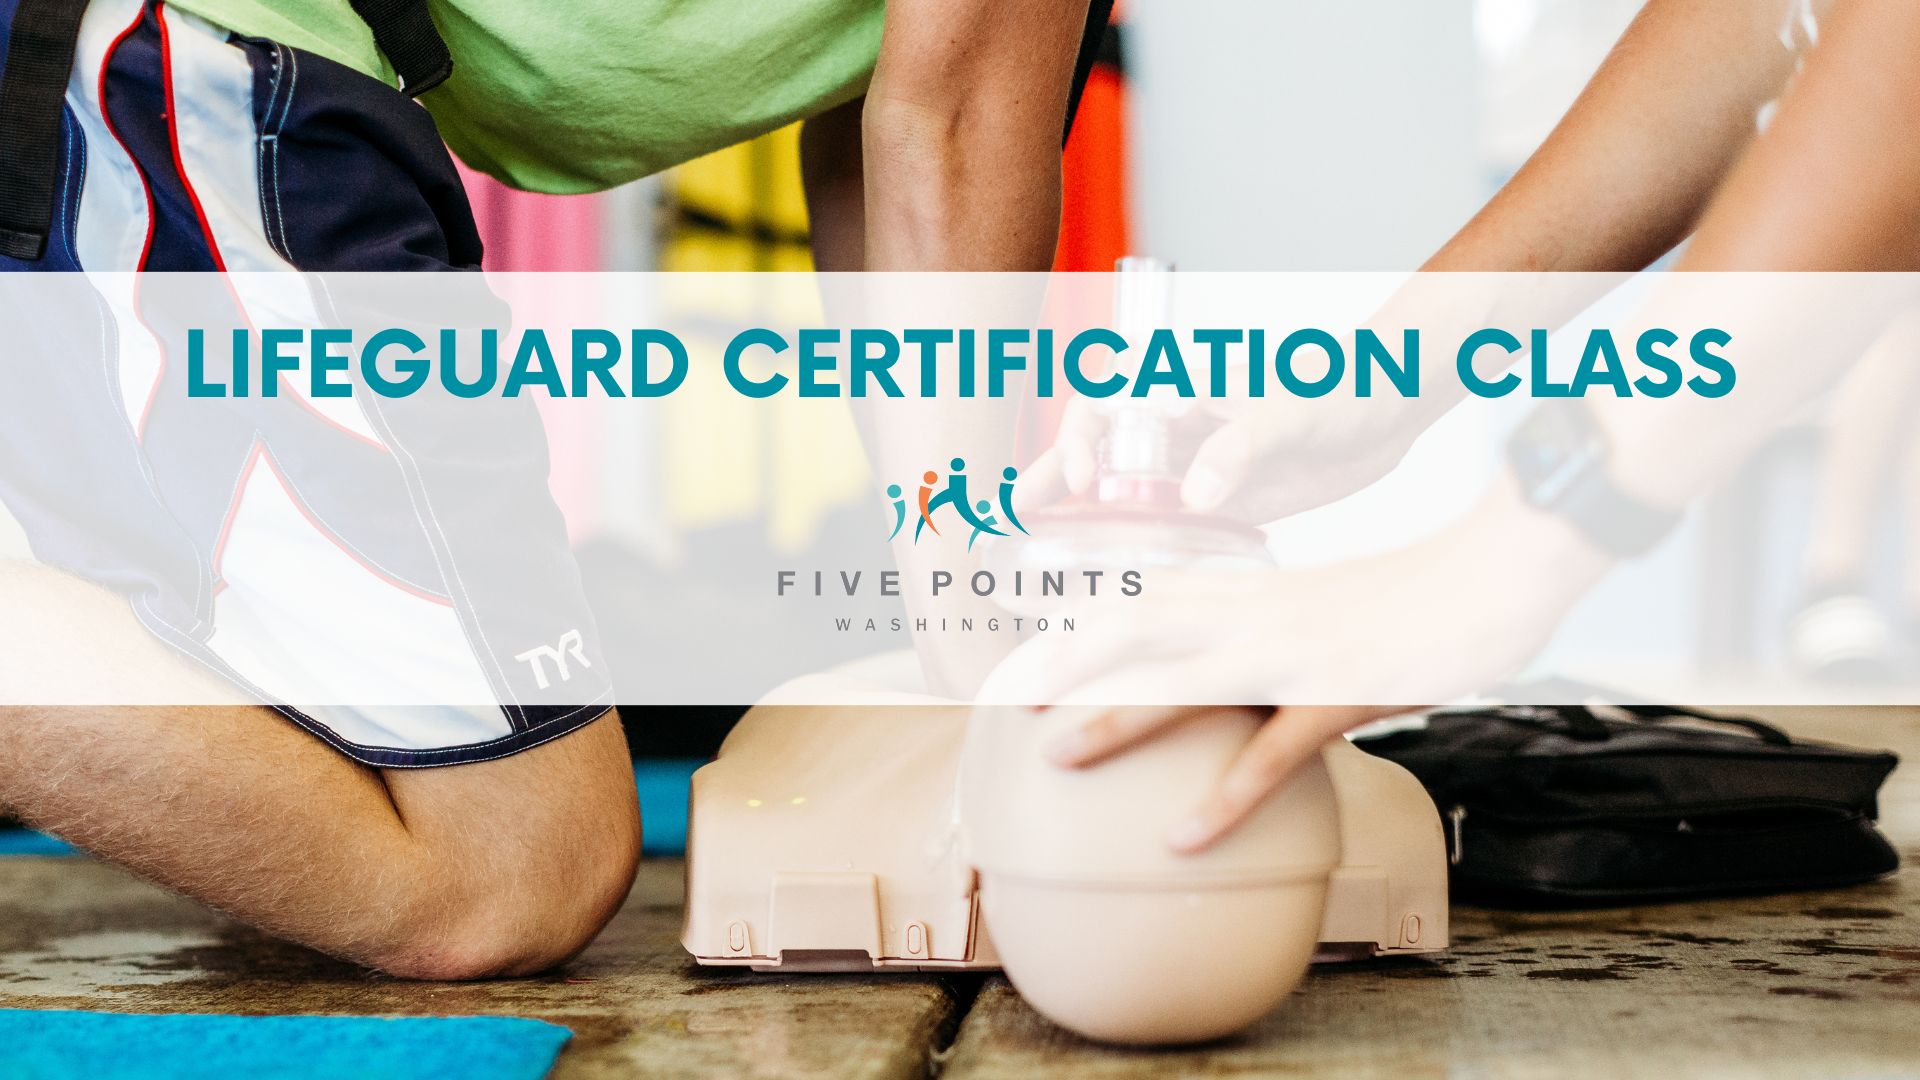 Lifeguard certification class flyer